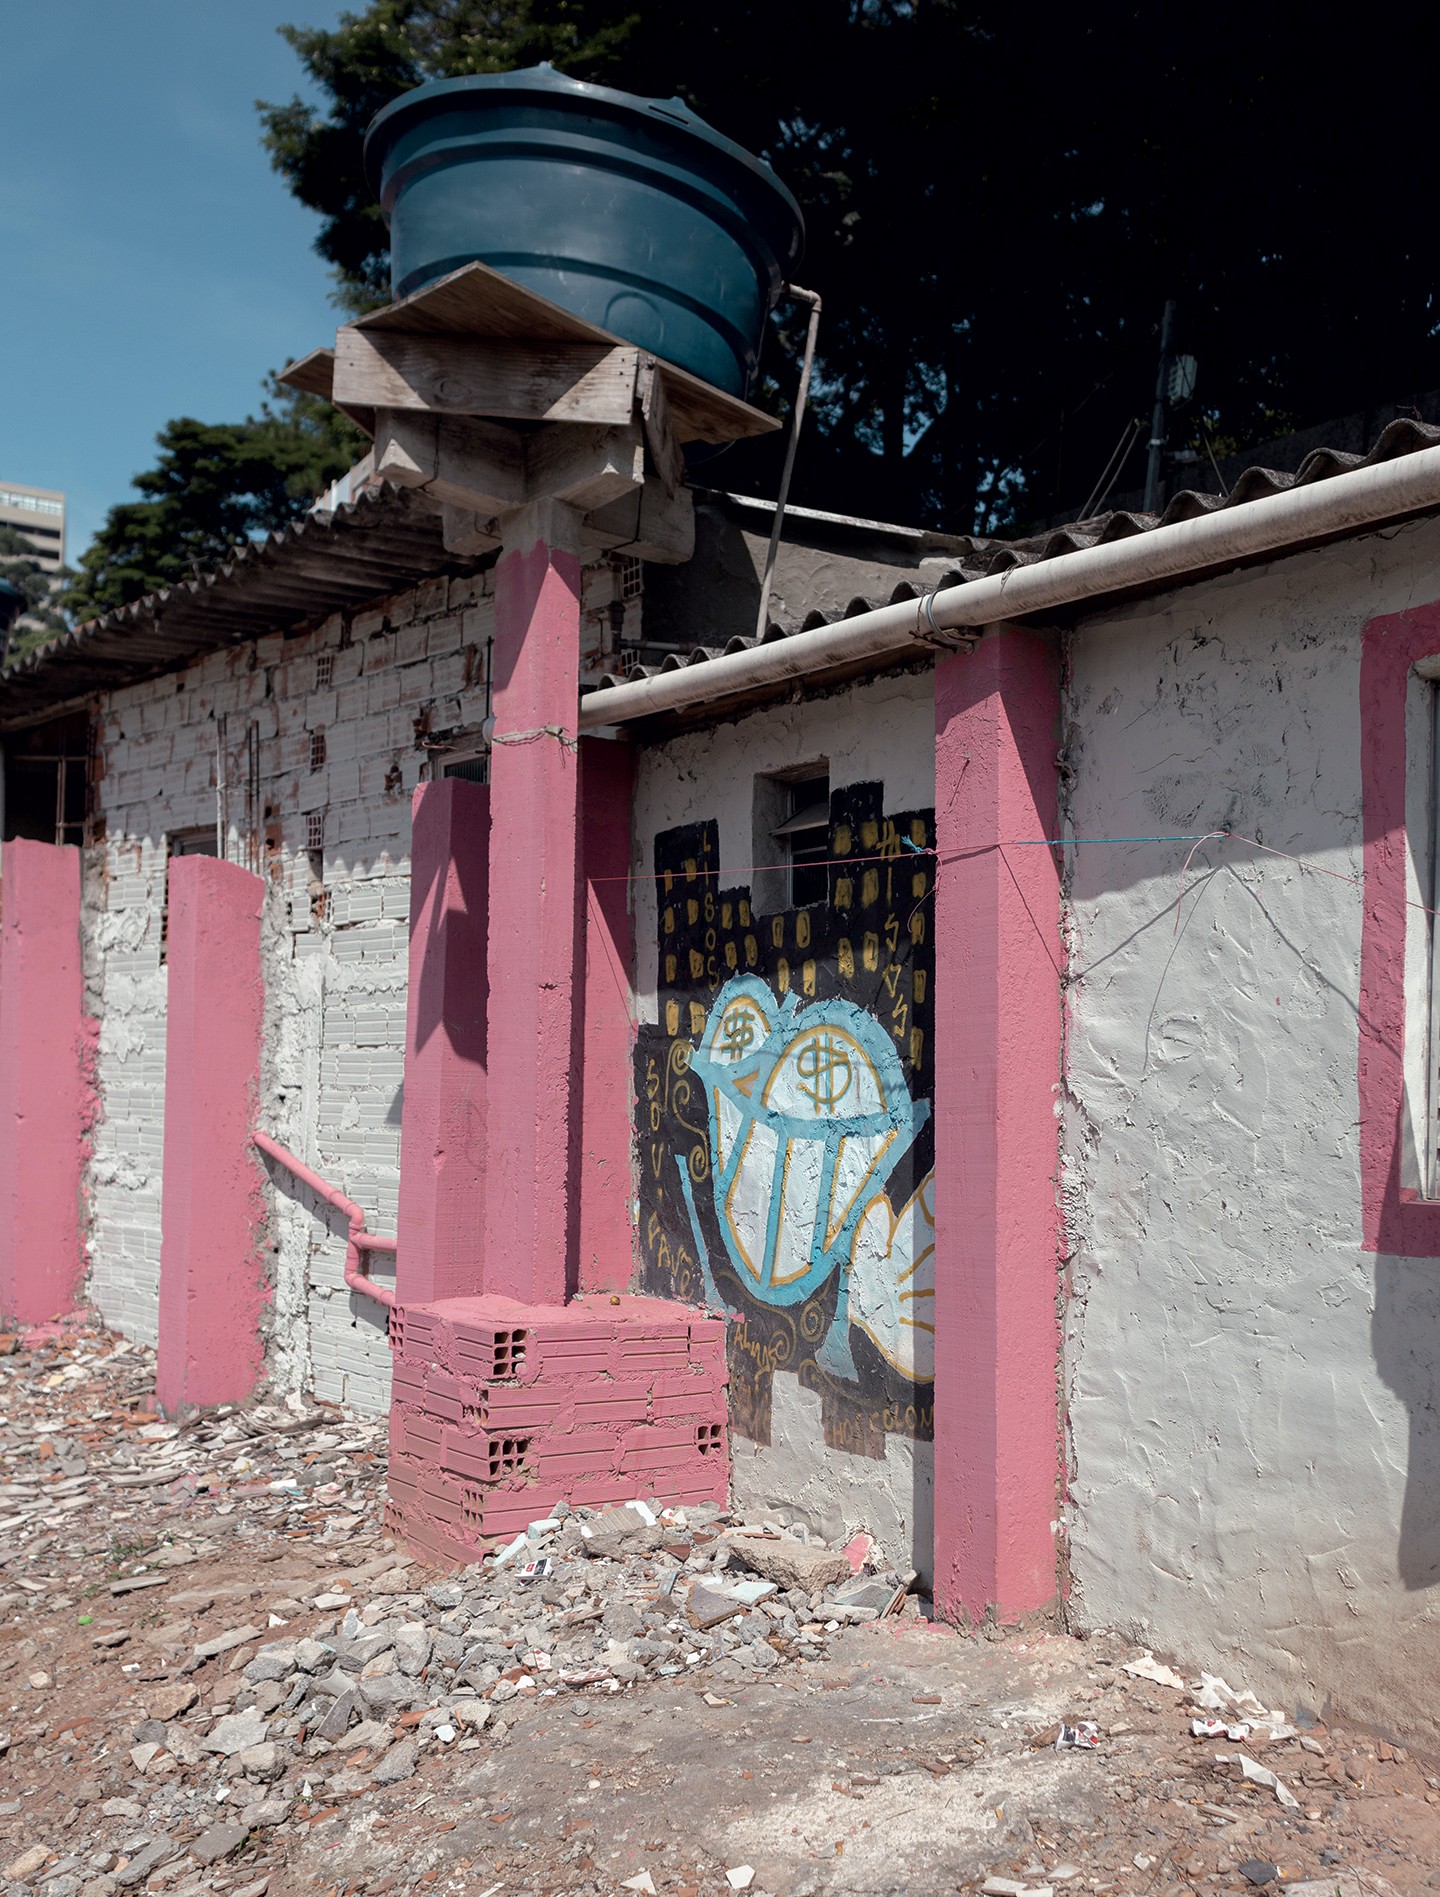 Arquiteta transforma lixão em espaço público de convívio. Conheça a iniciativa que transformou vidas em Paraisópolis (Foto: GABRIELA PORTILHO)